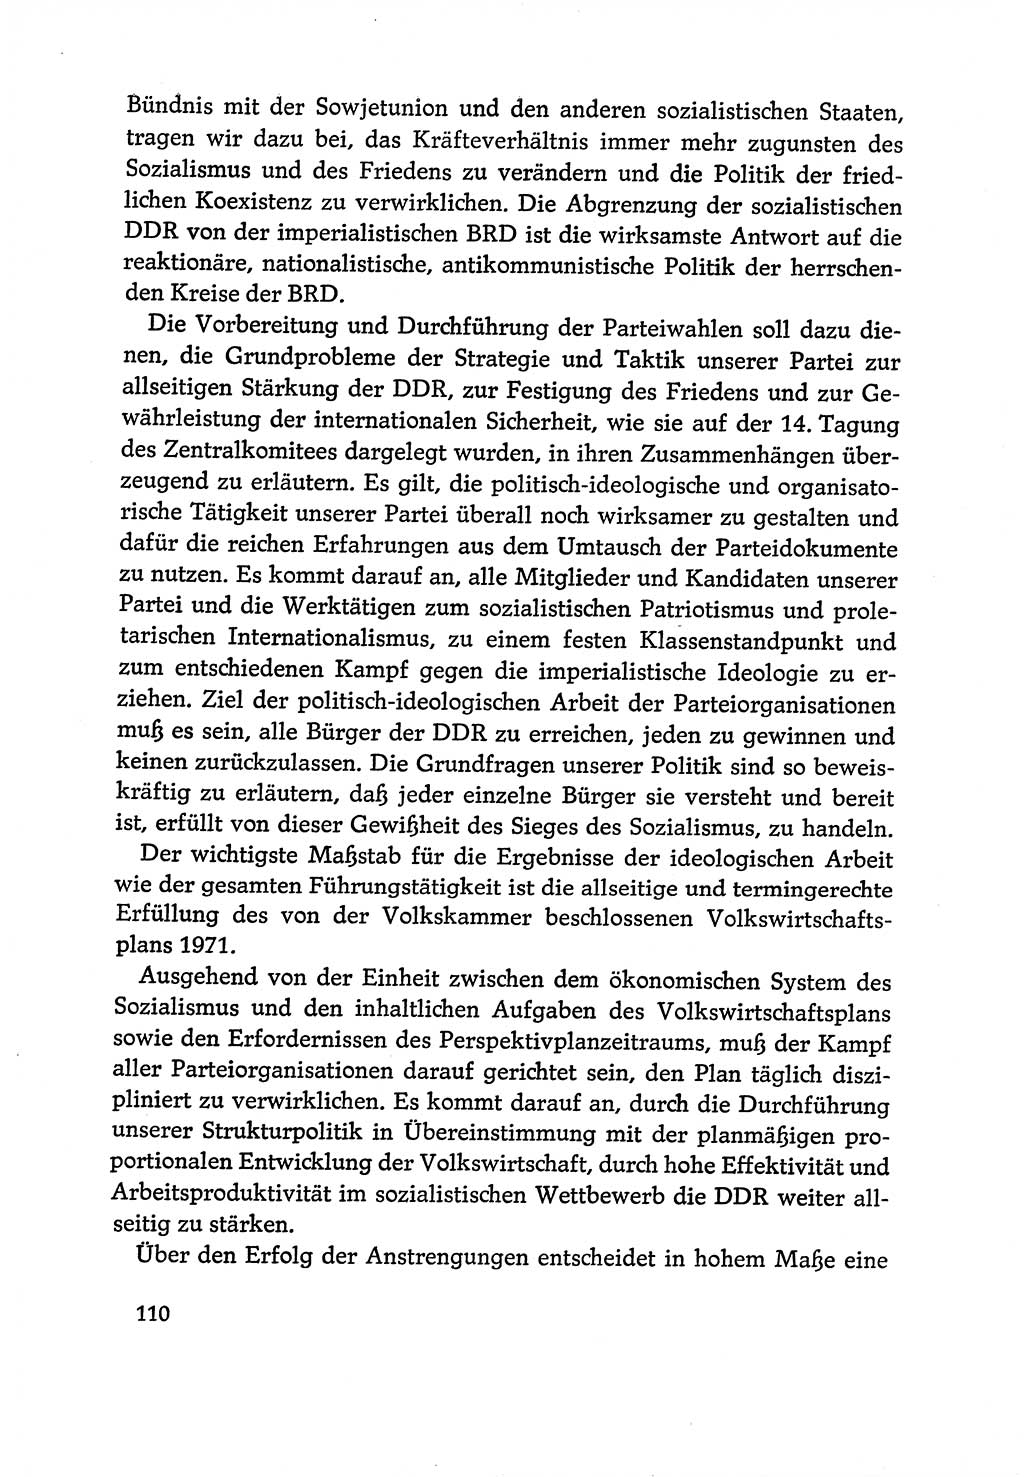 Dokumente der Sozialistischen Einheitspartei Deutschlands (SED) [Deutsche Demokratische Republik (DDR)] 1970-1971, Seite 110 (Dok. SED DDR 1970-1971, S. 110)